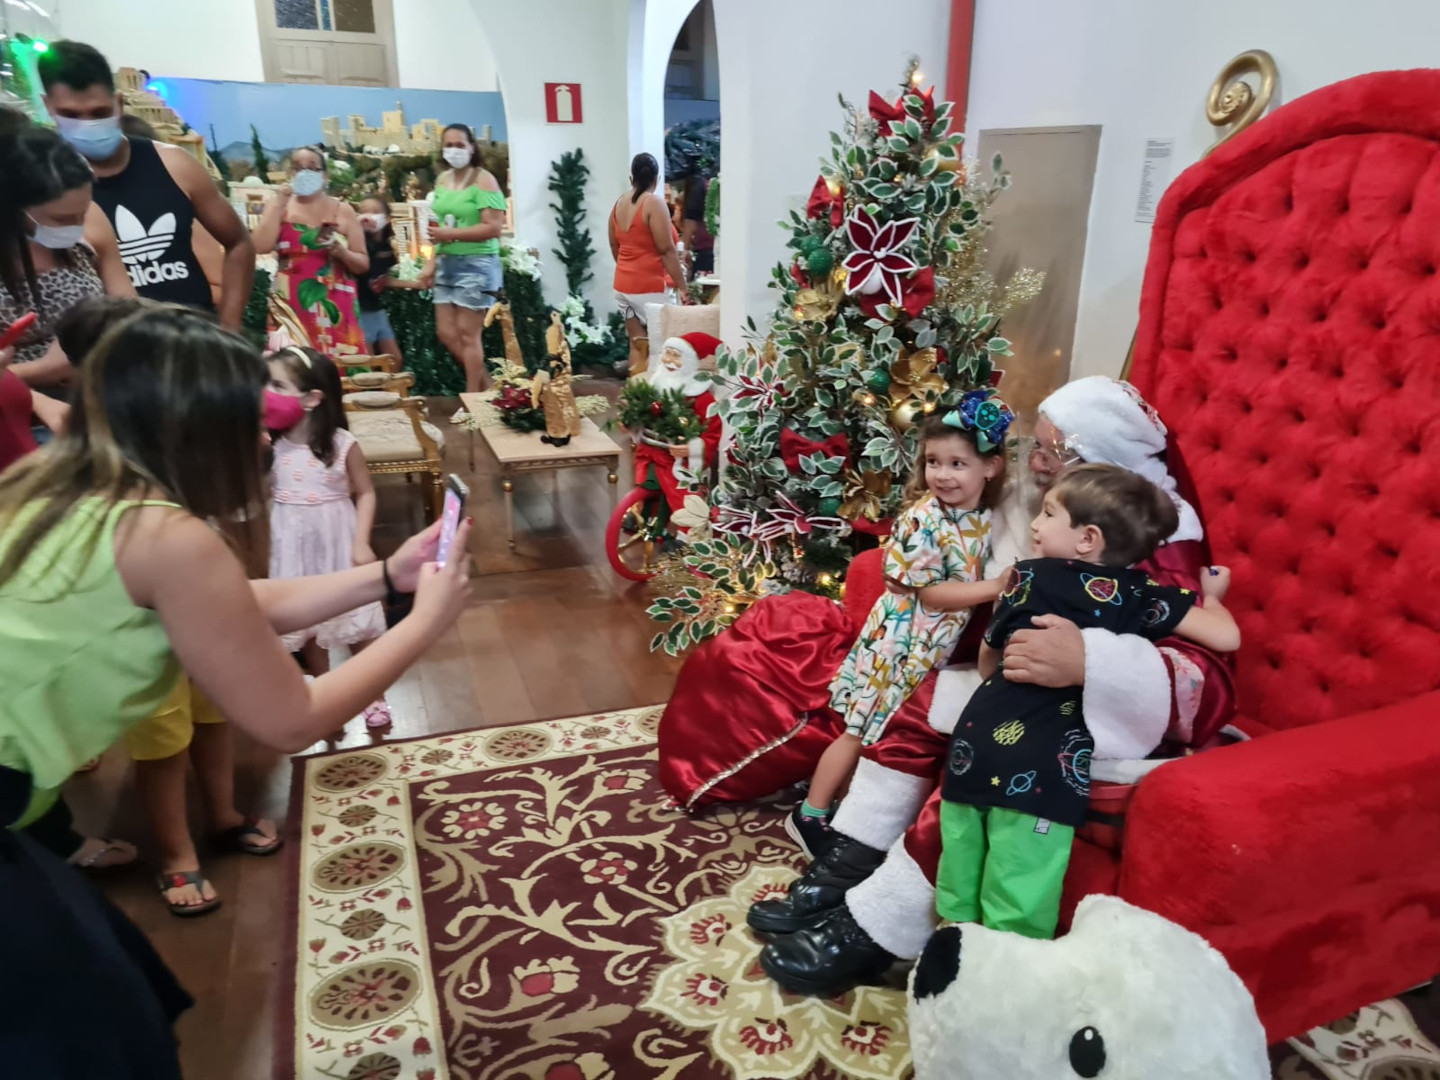 Inaugurada a decoração natalina de Pará de Minas